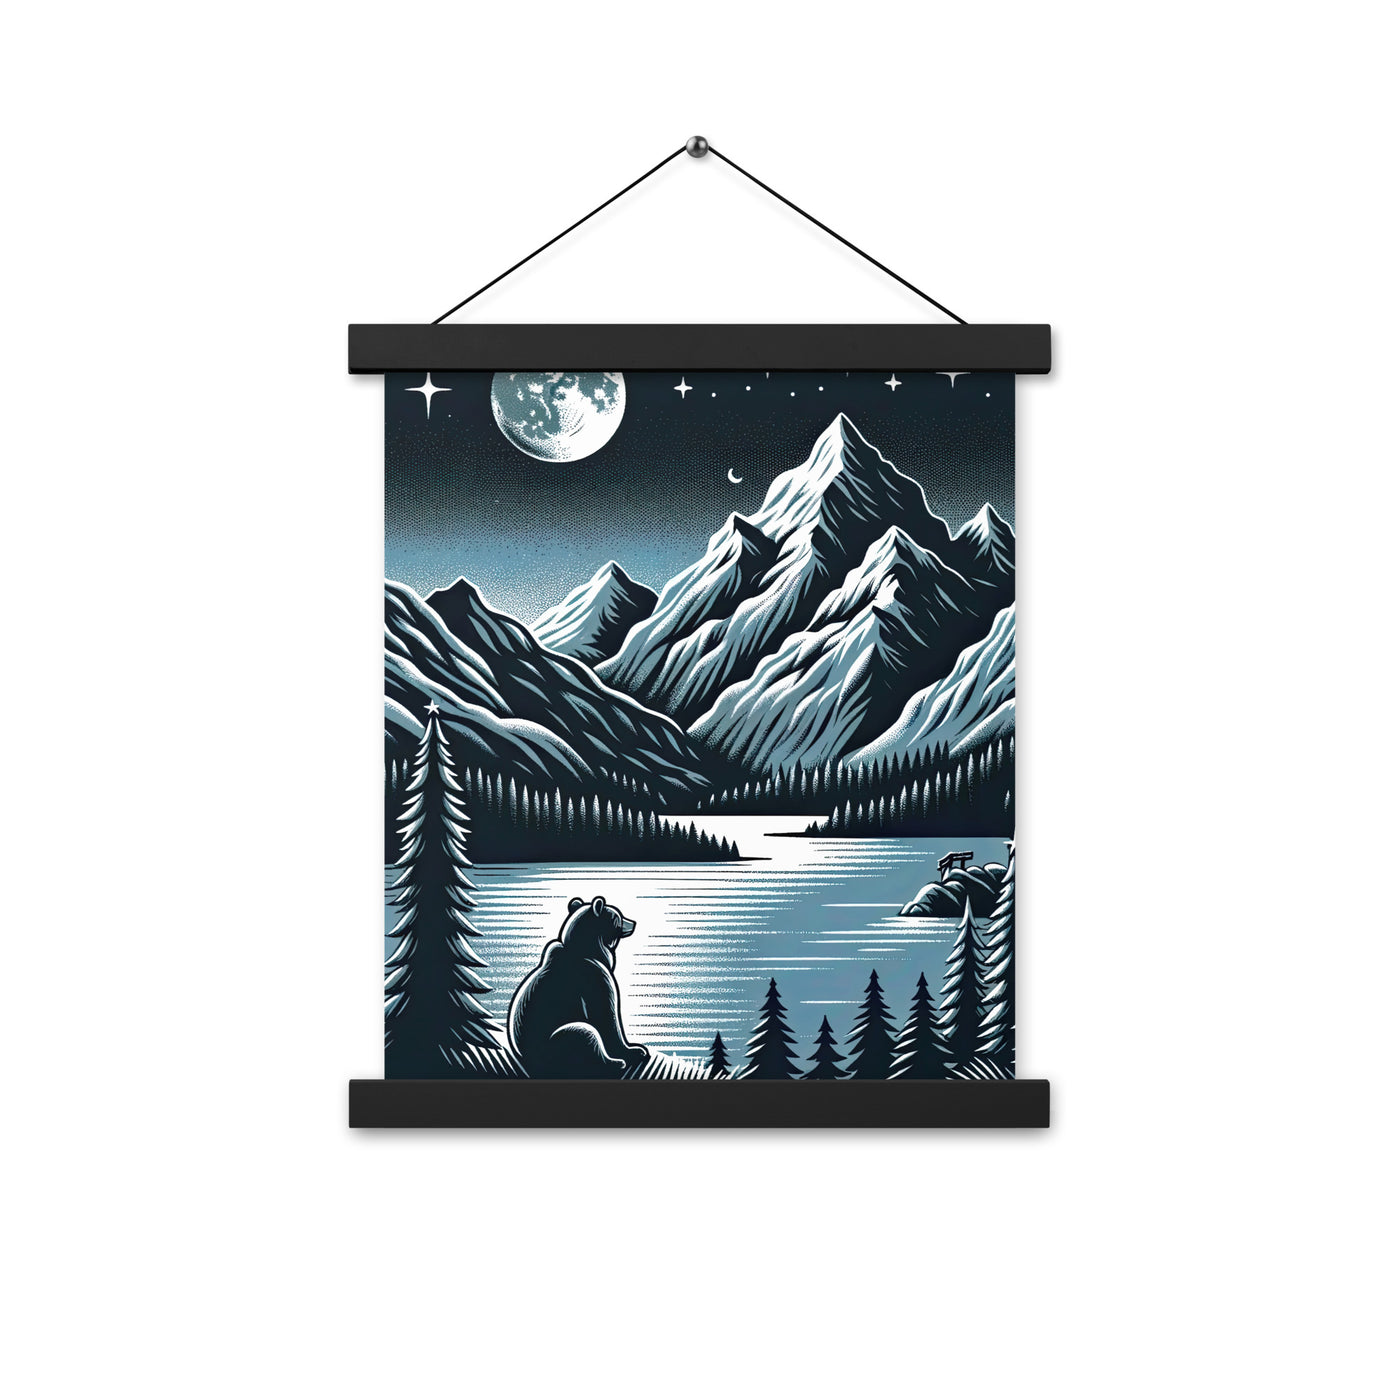 Bär in Alpen-Mondnacht, silberne Berge, schimmernde Seen - Premium Poster mit Aufhängung camping xxx yyy zzz 27.9 x 35.6 cm